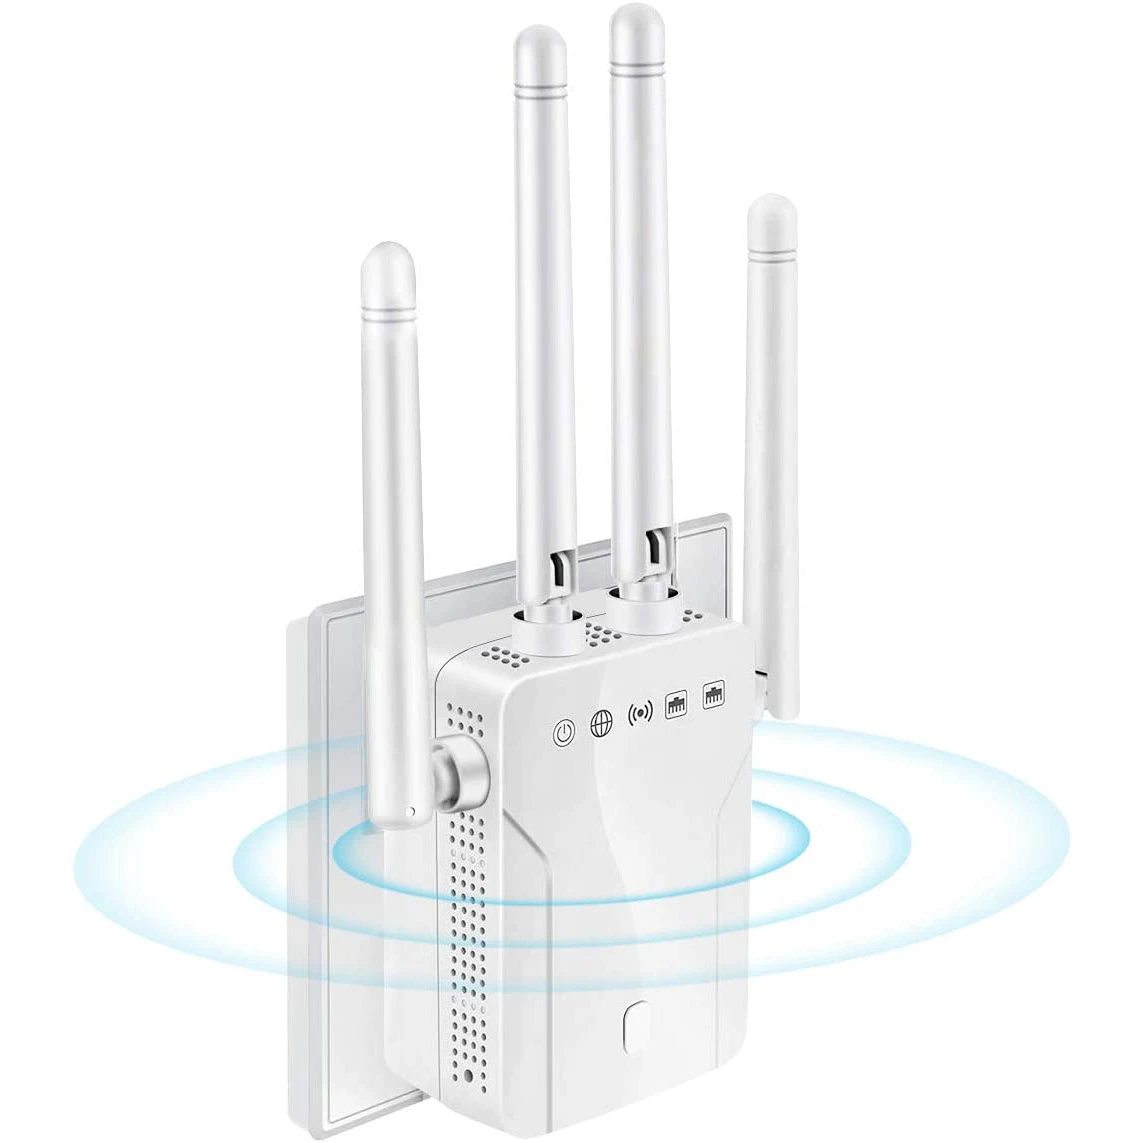 spectrum wifi amplifier Bộ Mở Rộng Sóng WiFi Tốc Độ 1200Mbps Wi-Fi Repeater 2 Băng Tần 2.4G & 5G Tín Hiệu Giãn Nở Cầu 360 ° Full Vùng Phủ Sóng cho Gia Đình Các Bộ Định Tuyến Dễ Dàng Bộ wifi network amplifier